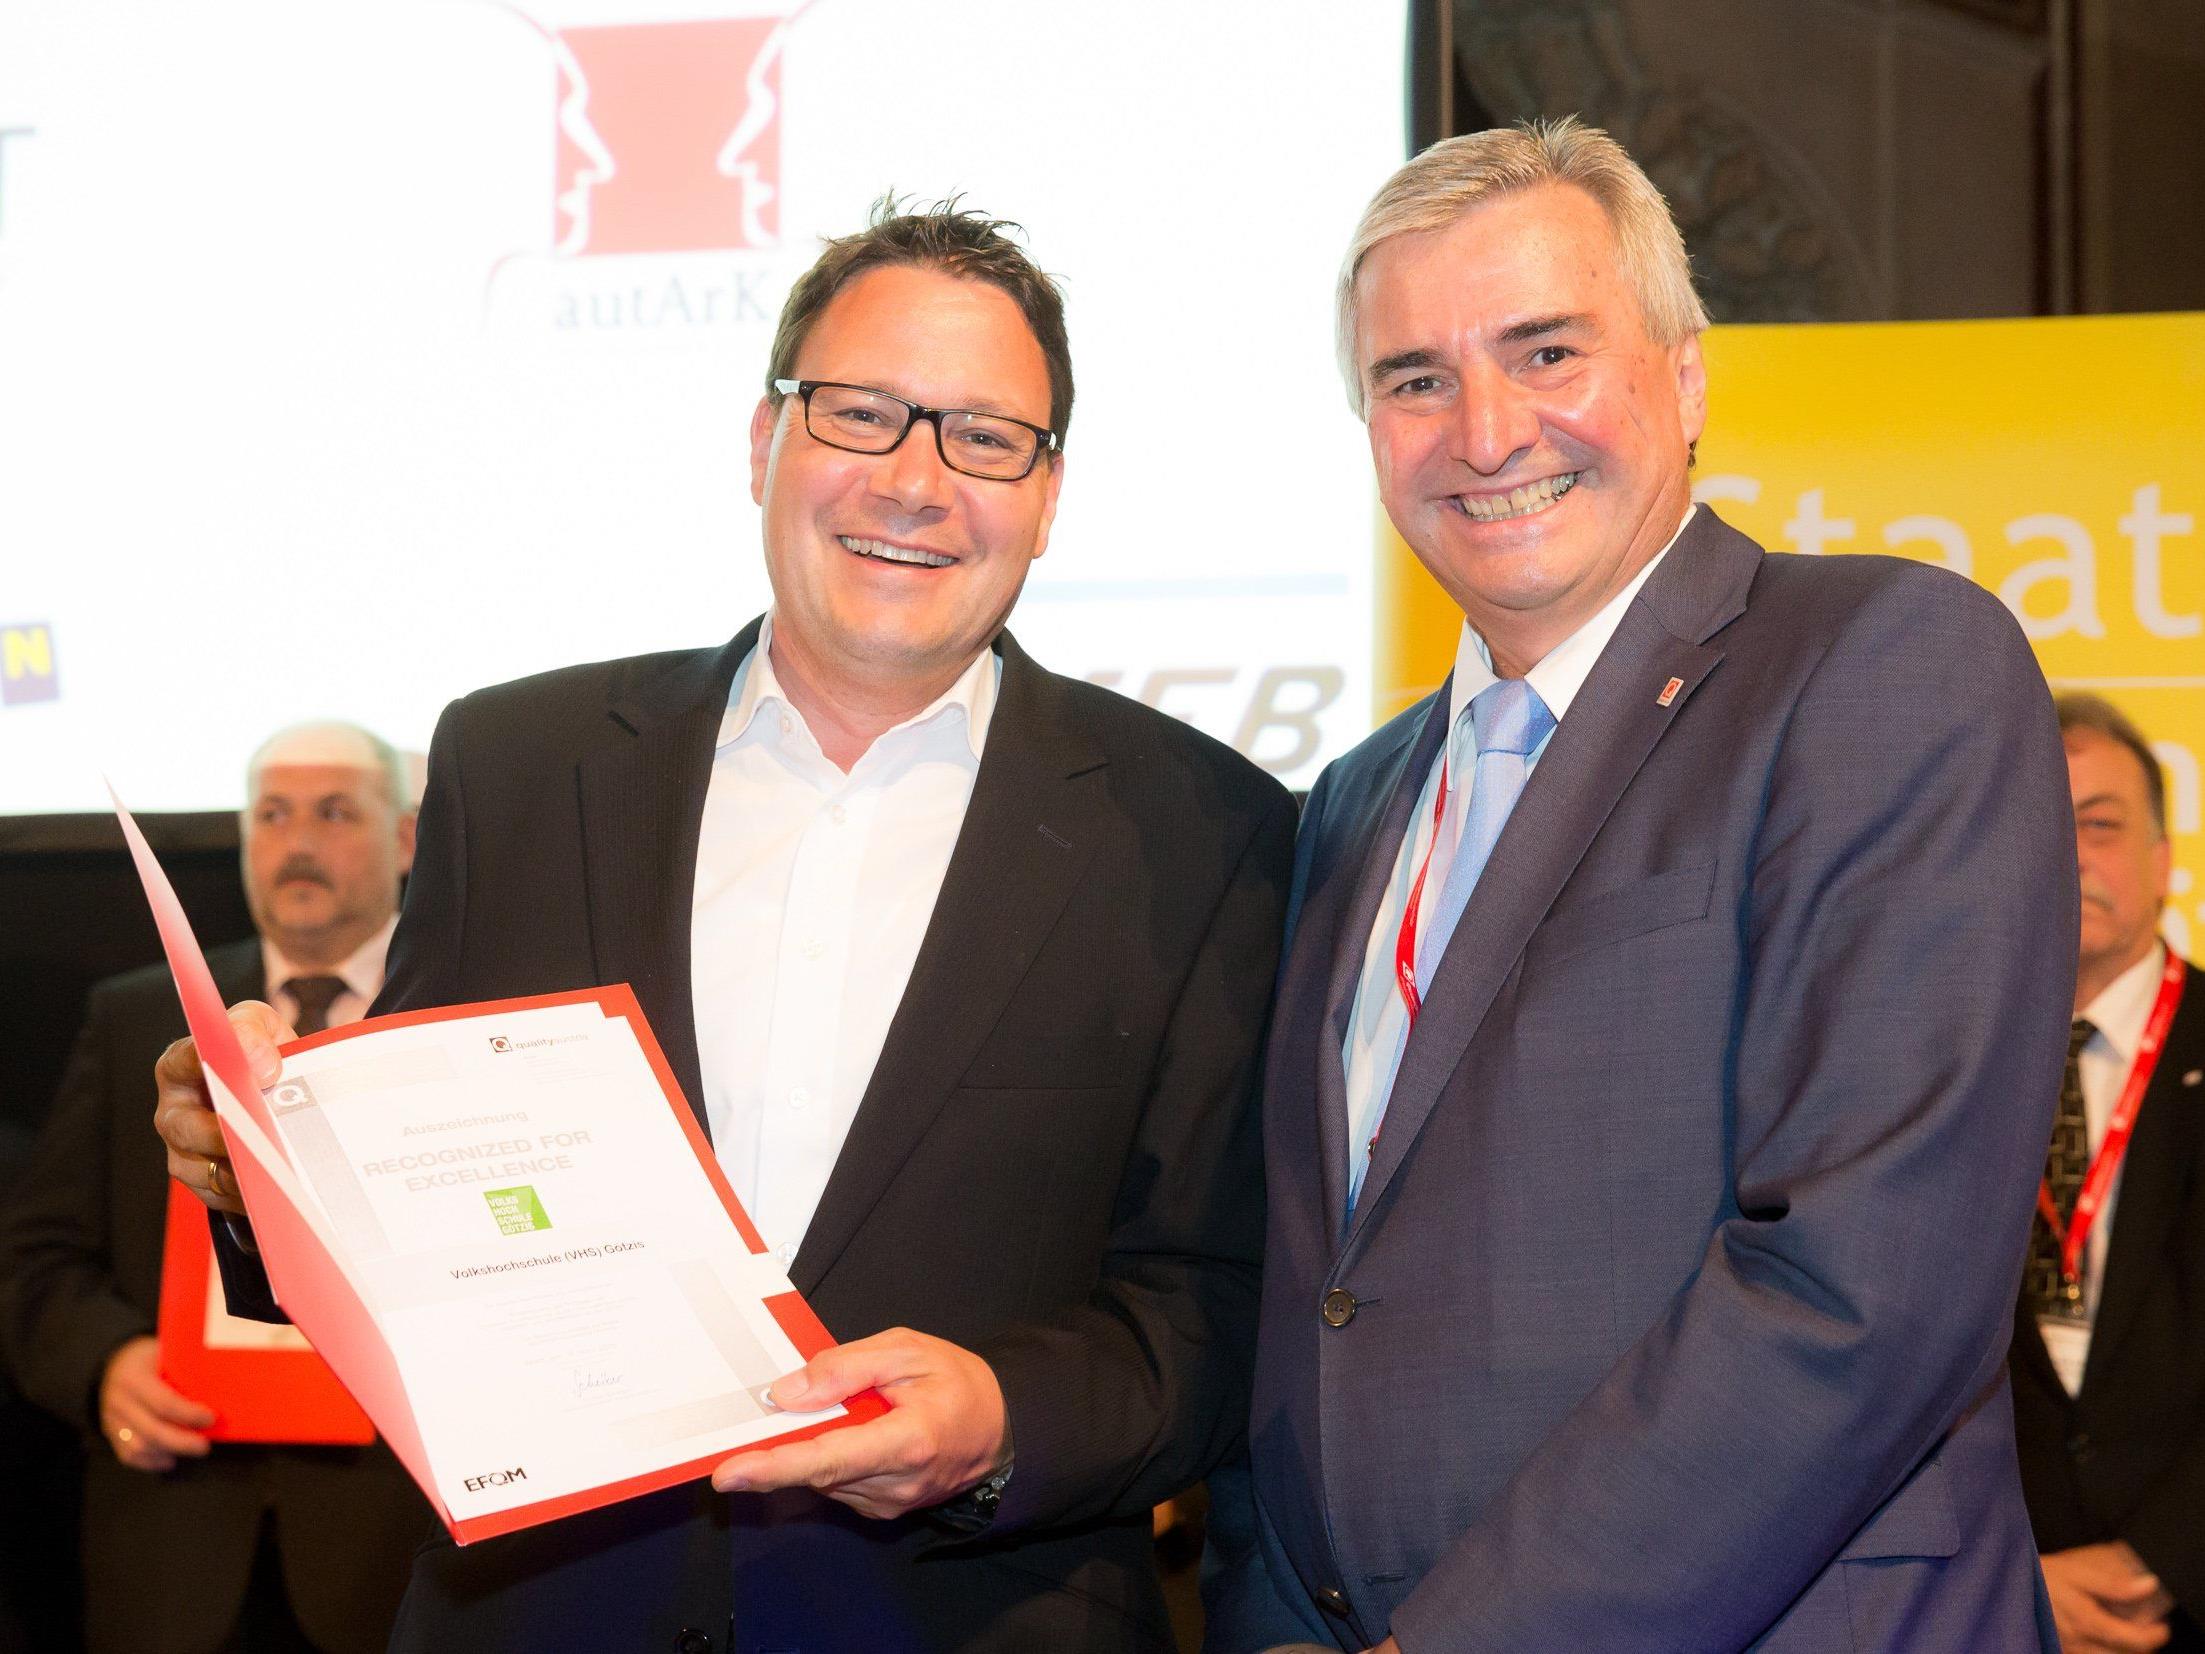 Der CEO der Quality Austria, Dr. Konrad Scheiber, überreicht GF Stefan Fischnaller das Qualitätsdiplom